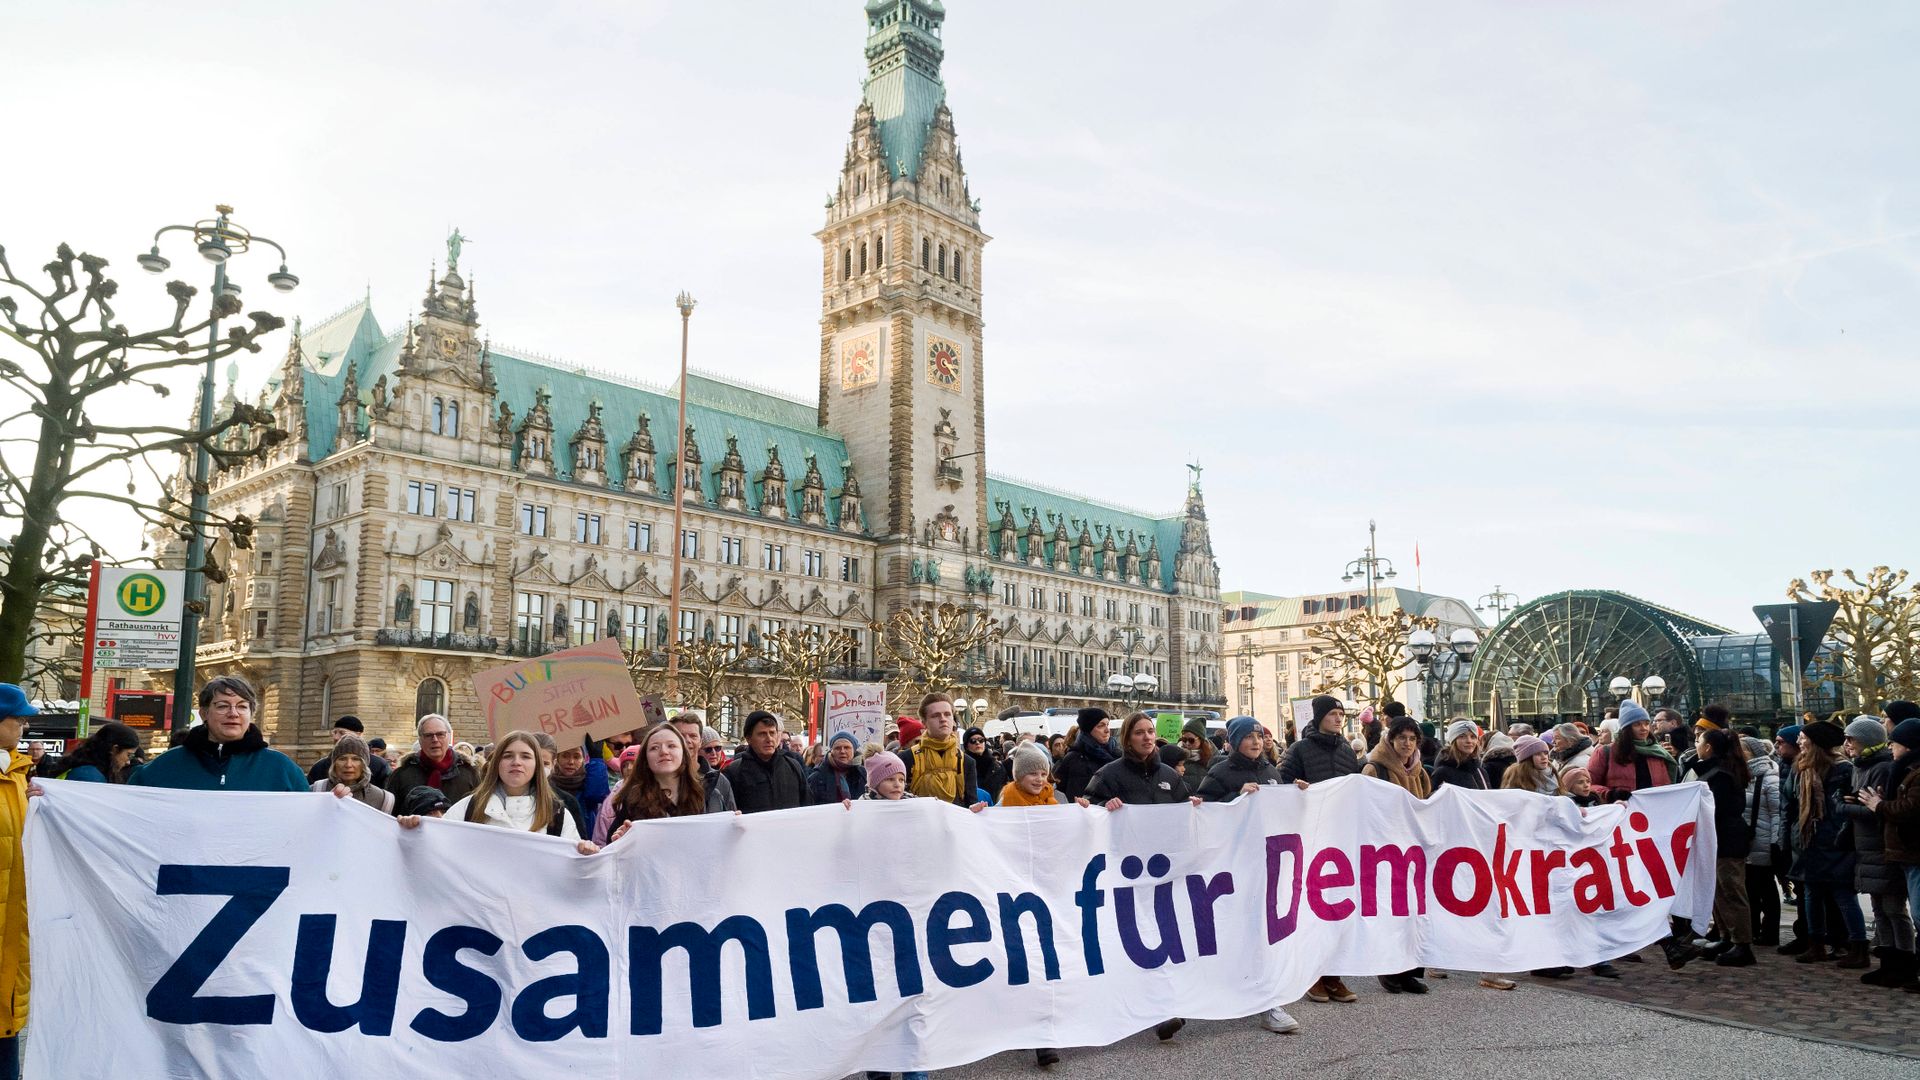 demos gegen rechts: spontane proteste vor dem brandenburger tor nach angriffen auf politiker